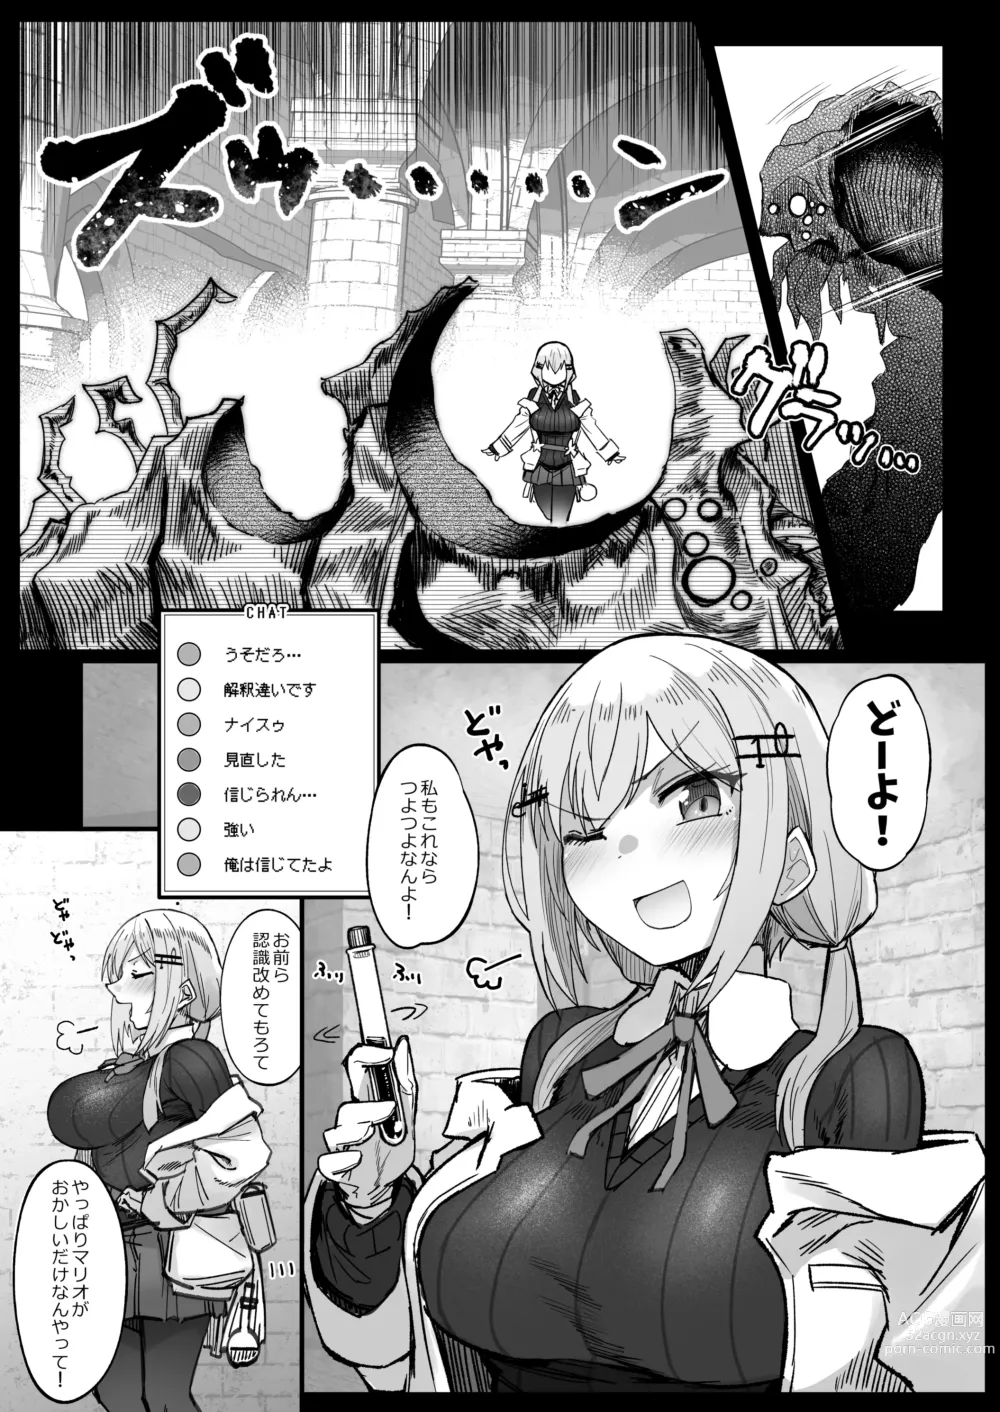 Page 7 of doujinshi Niji Ero Trap Dungeon Bu 3